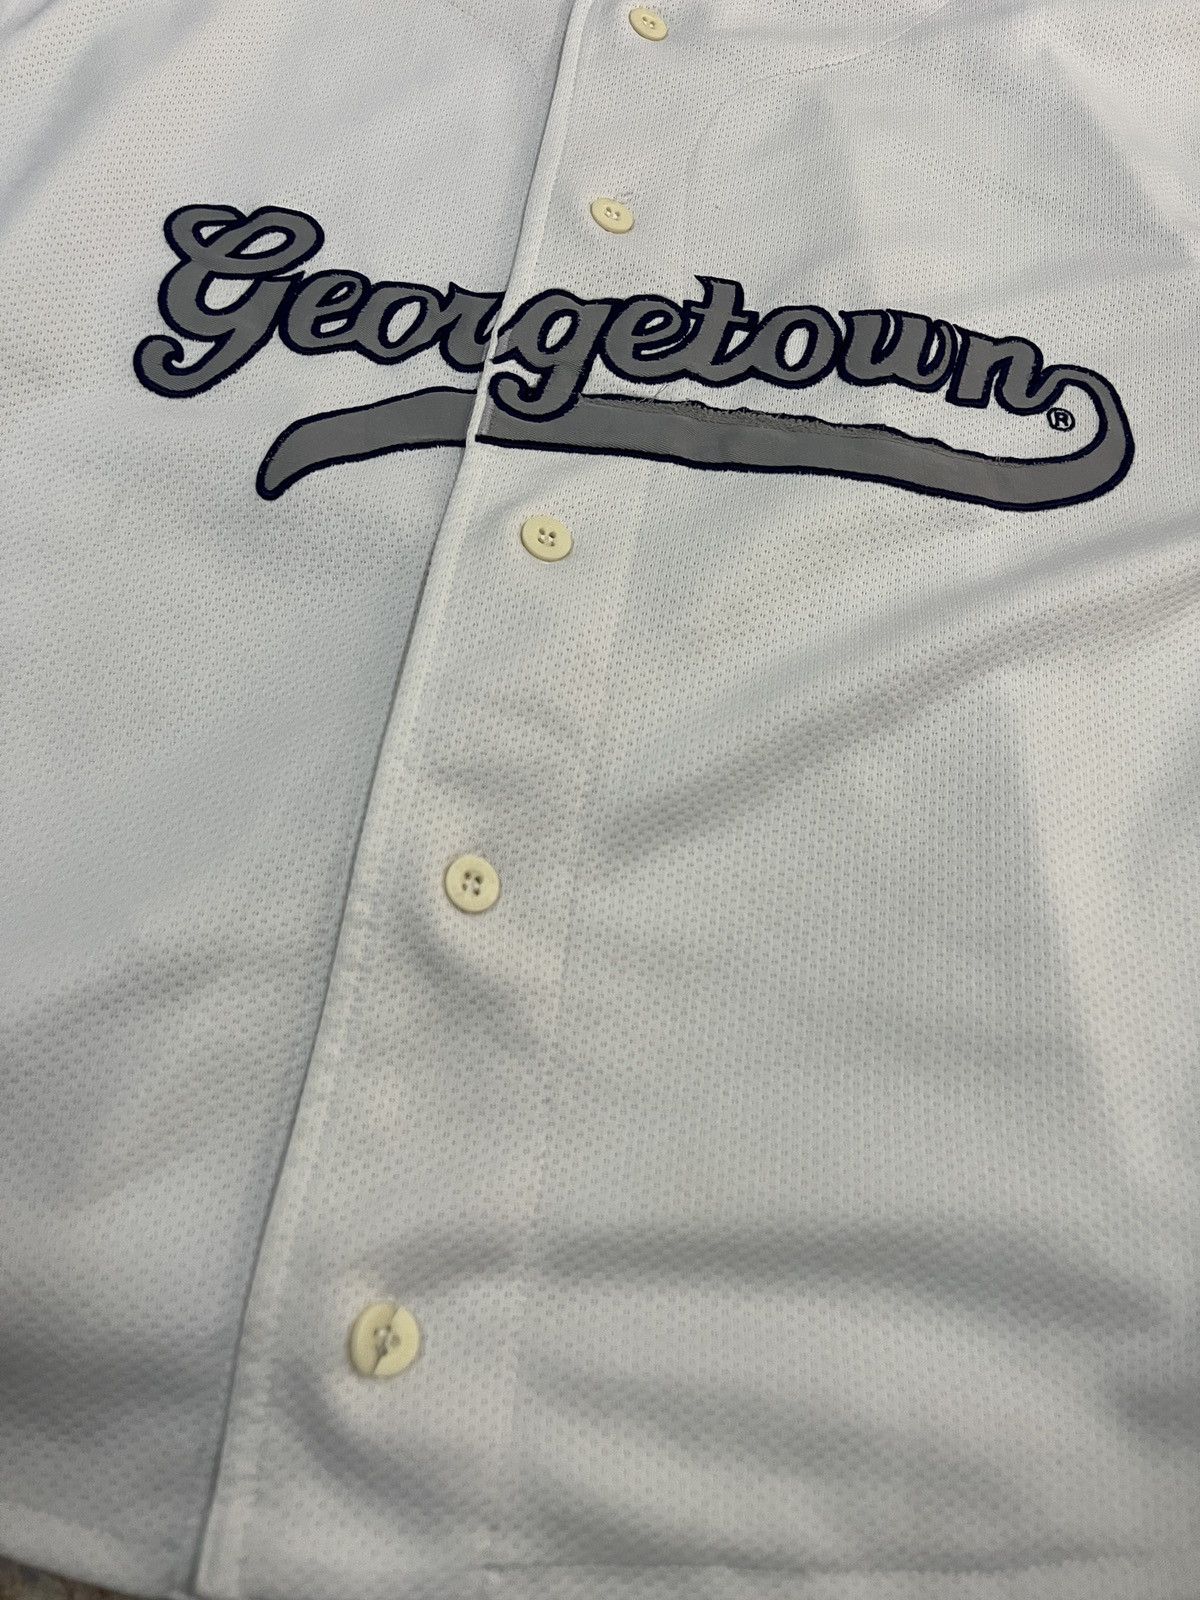 Vintage Starter Georgetown Hoyas Baseball Jersey - 6